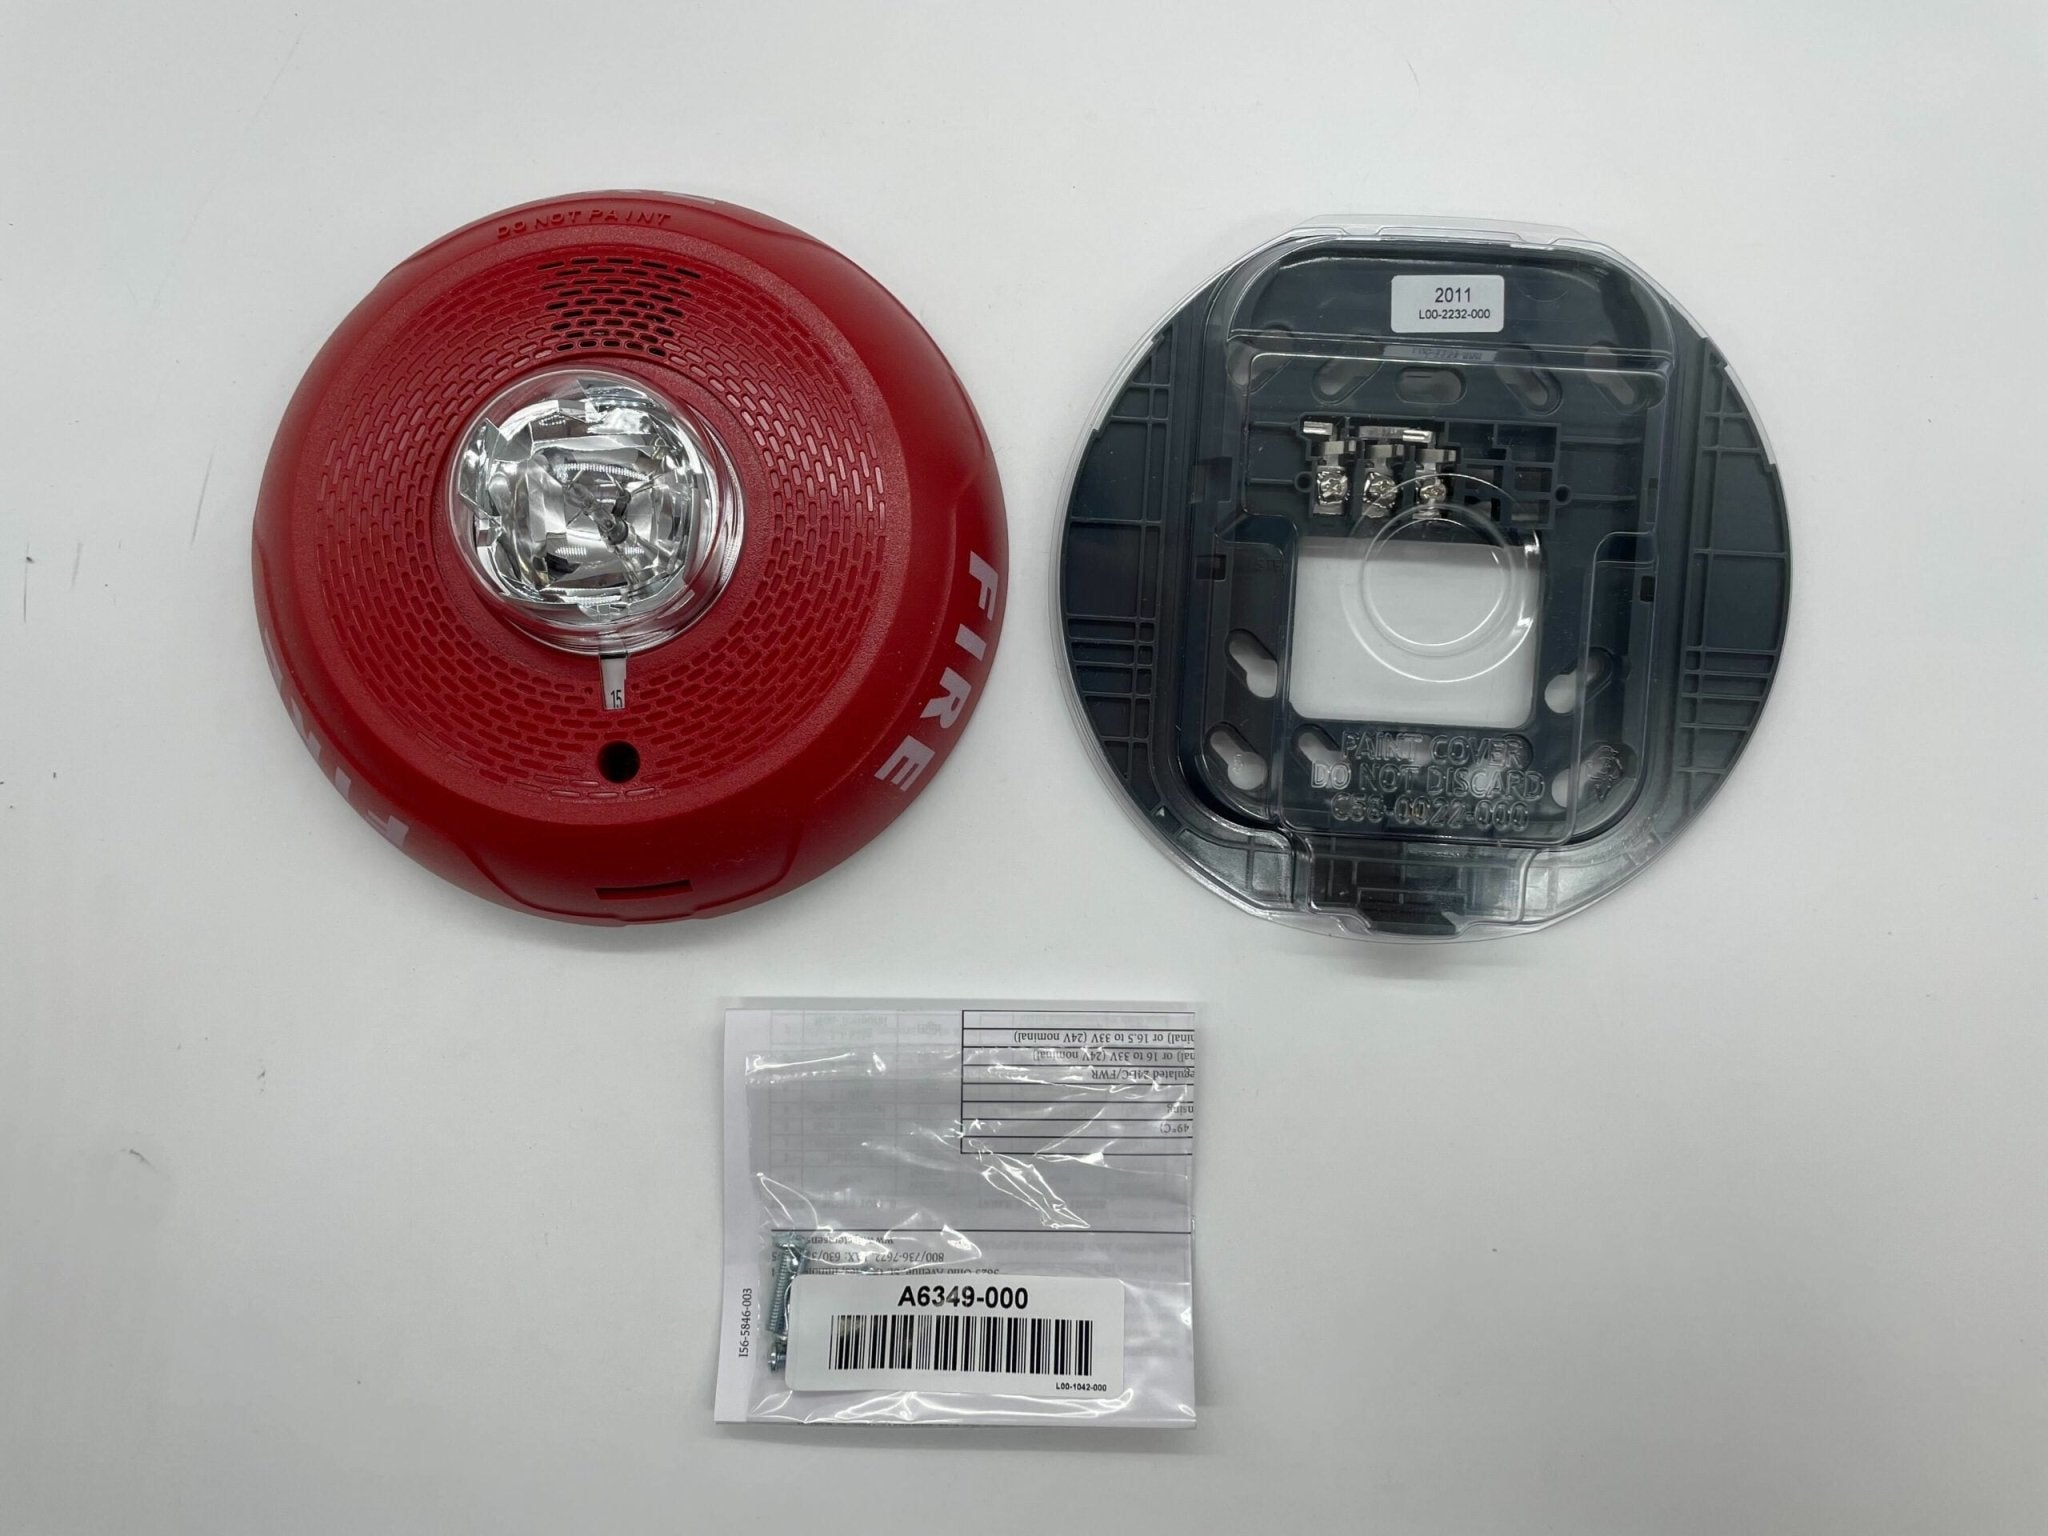 System Sensor PC2RL Ceiling Horn/Strobe Red - The Fire Alarm Supplier